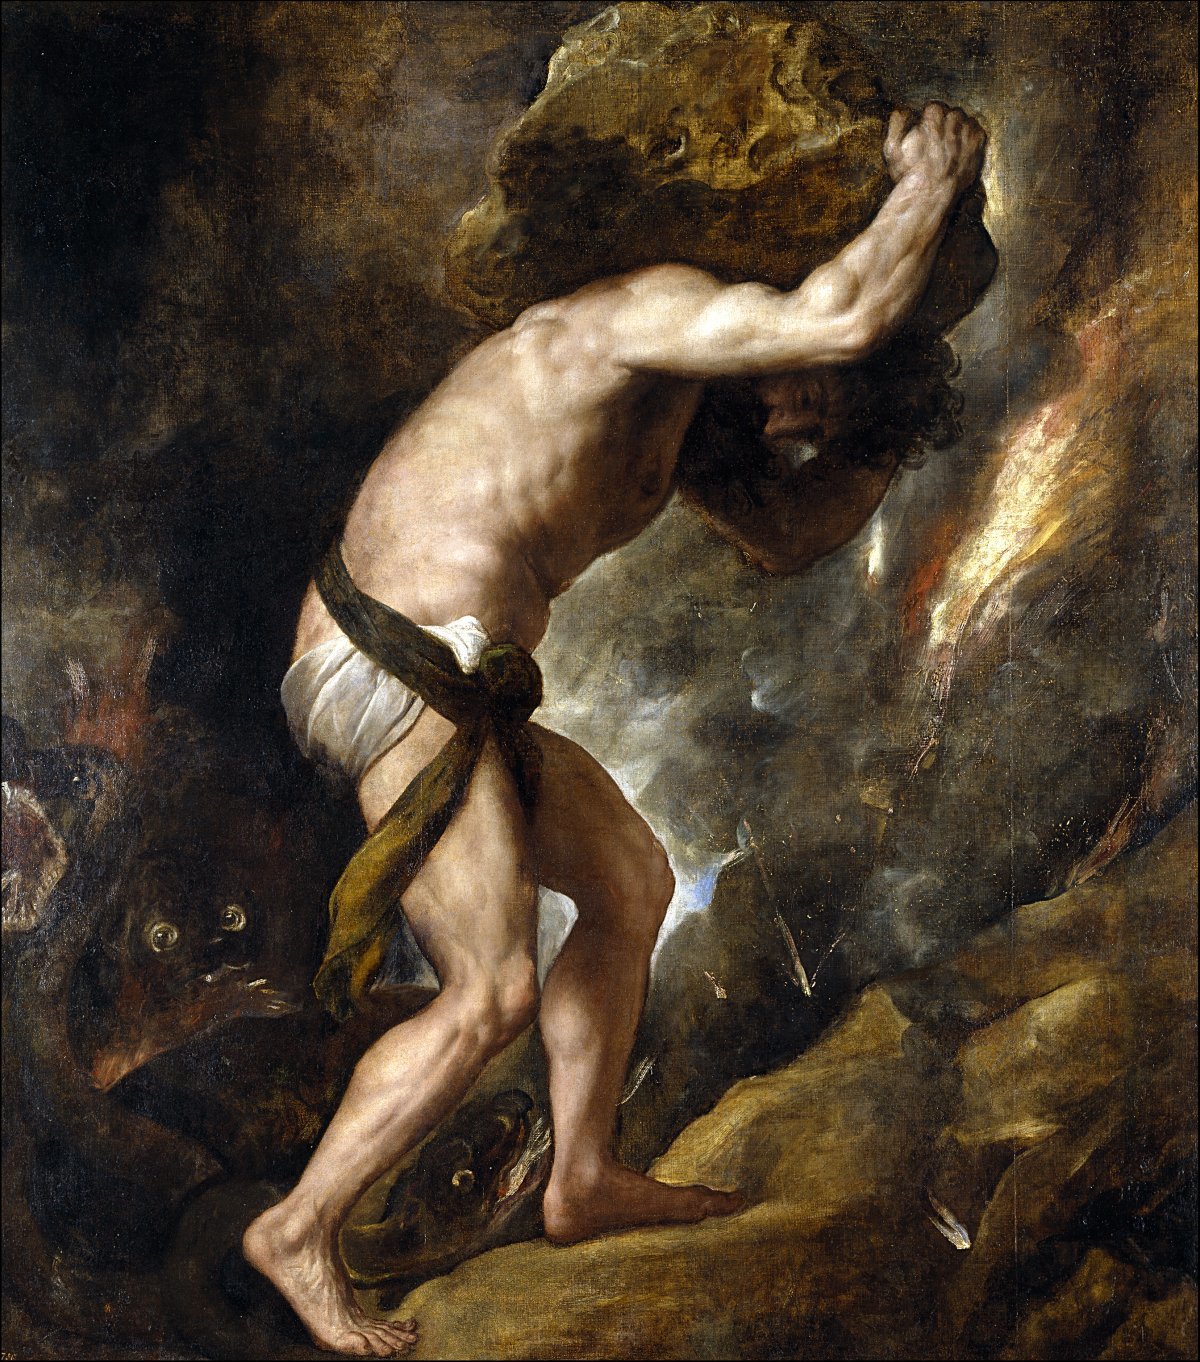 고대 그리스 신화 속 인물인 시지프스. 꾀가 많은 것으로 잘 알려진 시지프스는 신들을 기만한 대가로 큰 돌을 가파른 산 정상까지 밀어 올리는 무한한 형벌을 받는다. 사진 출처 위키피디아